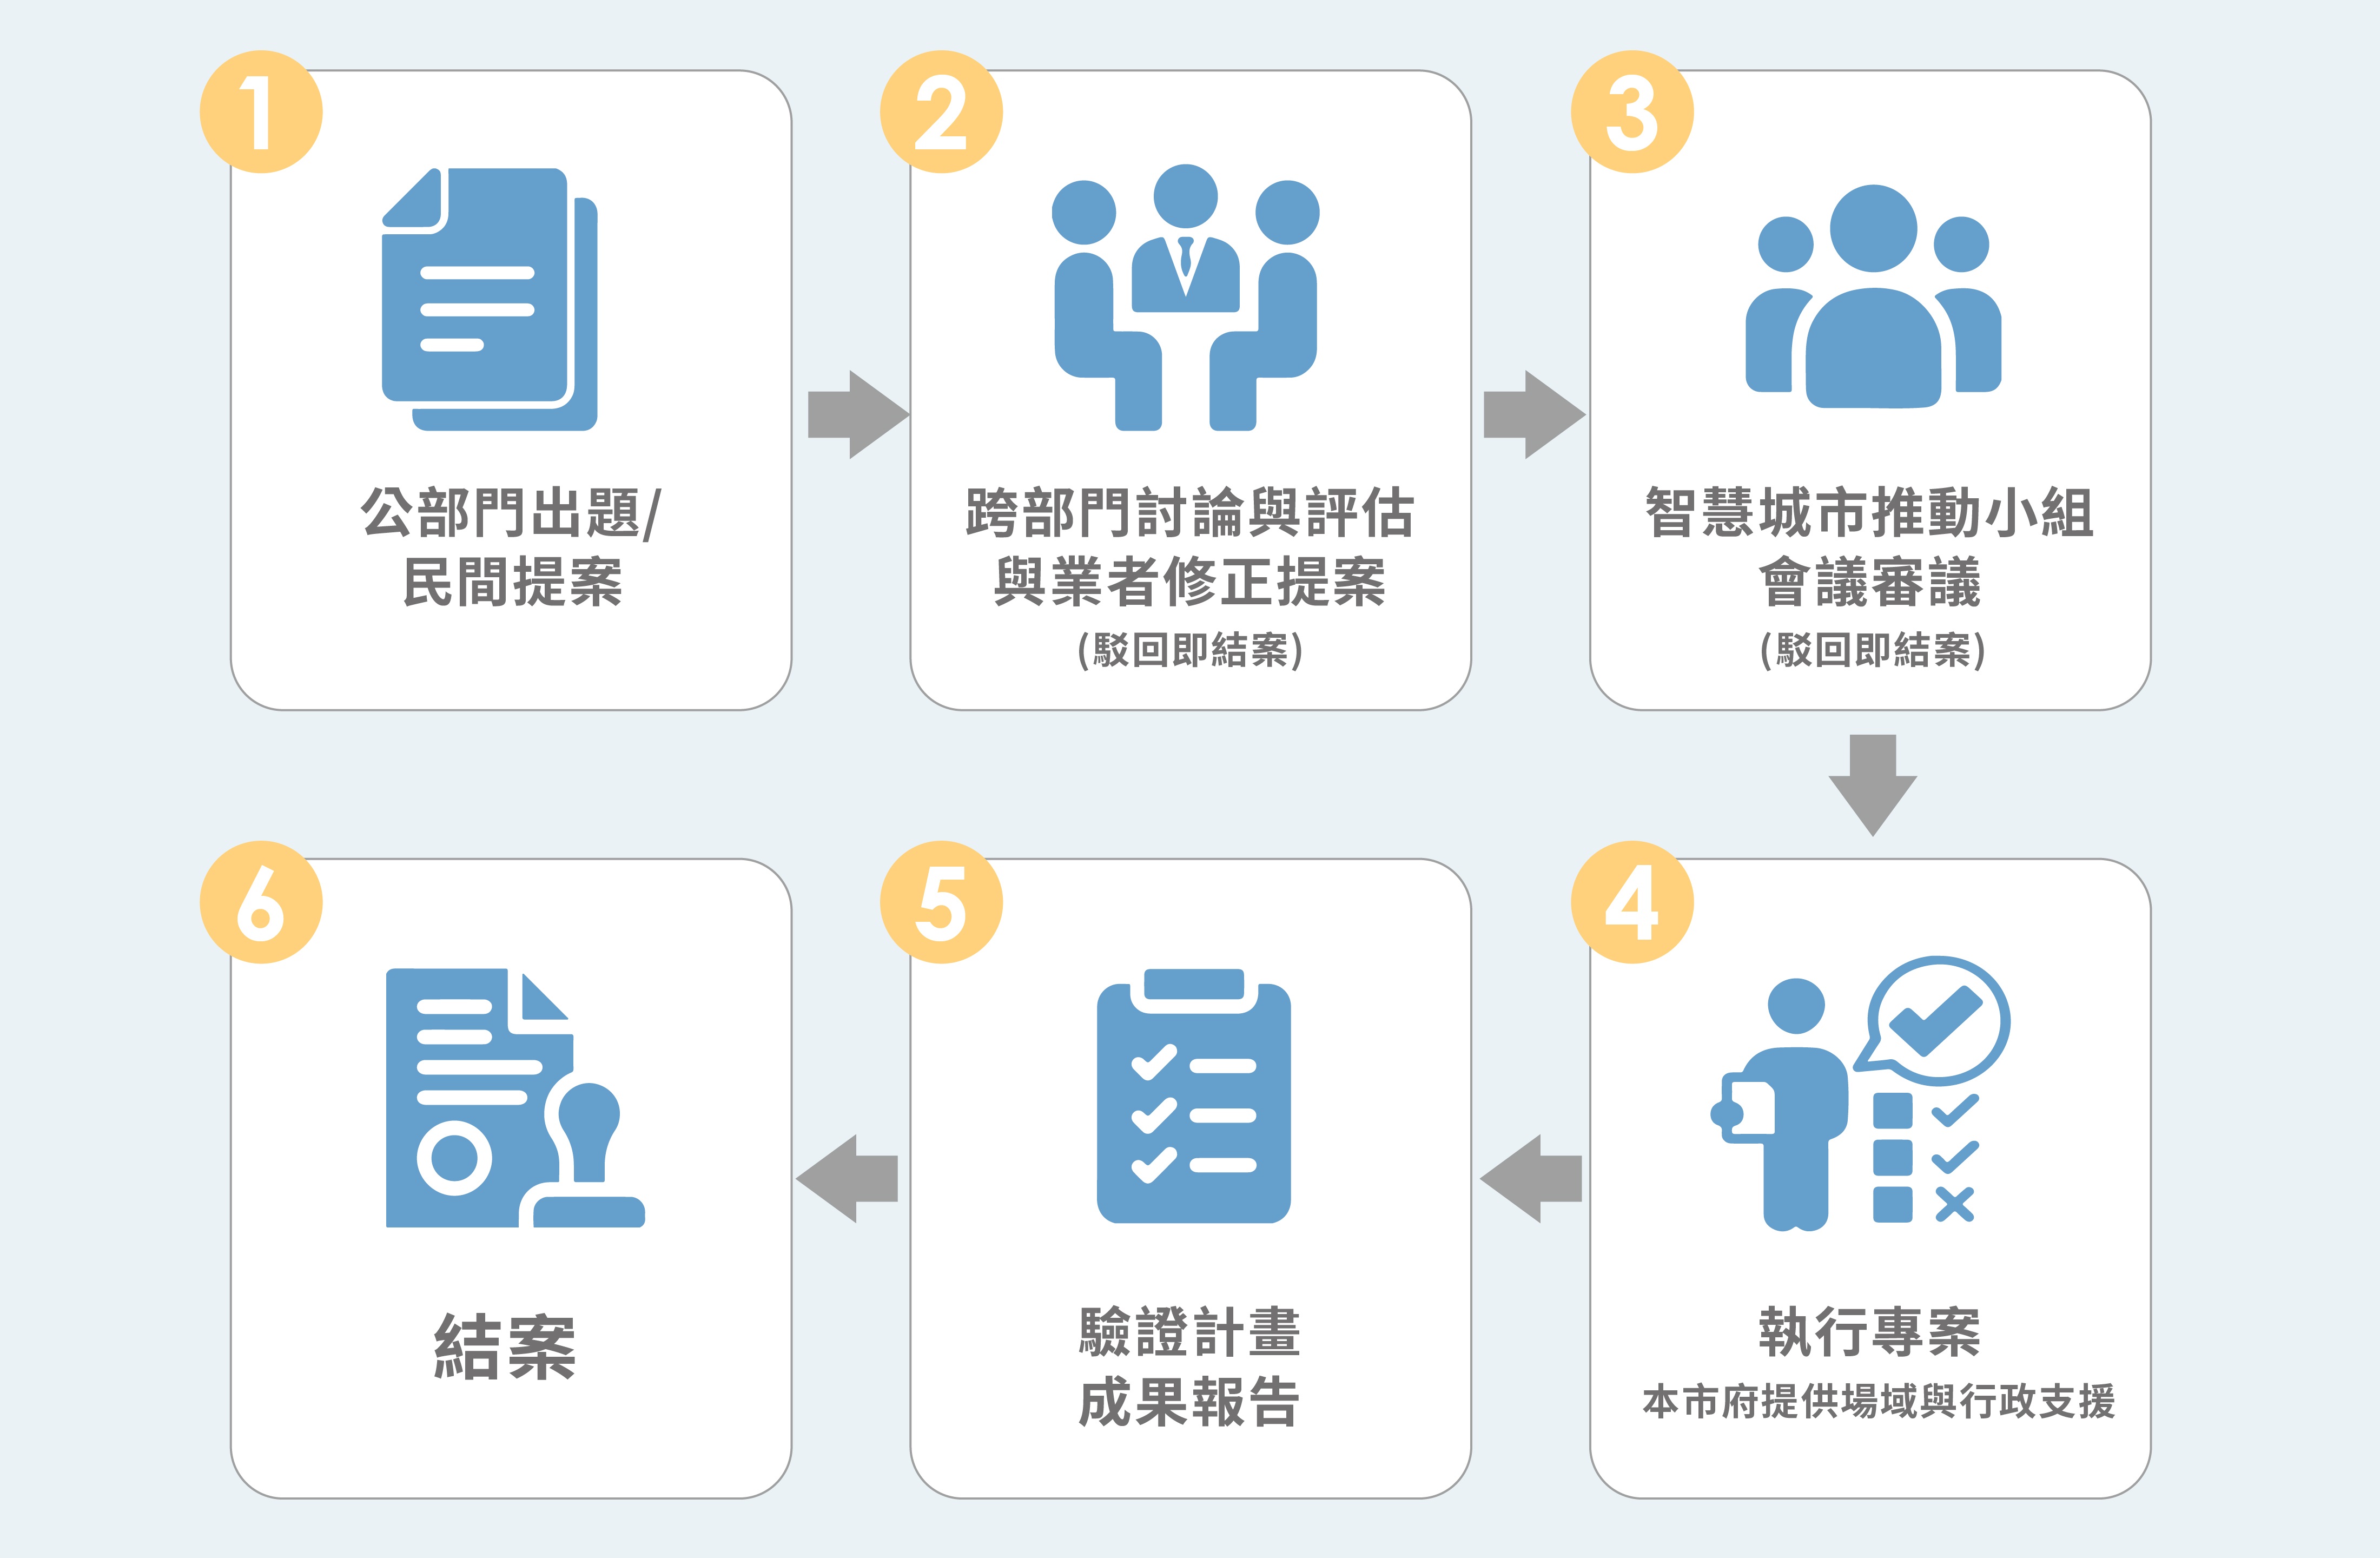 新竹市智慧城市場域驗證服務合作計畫實施流程